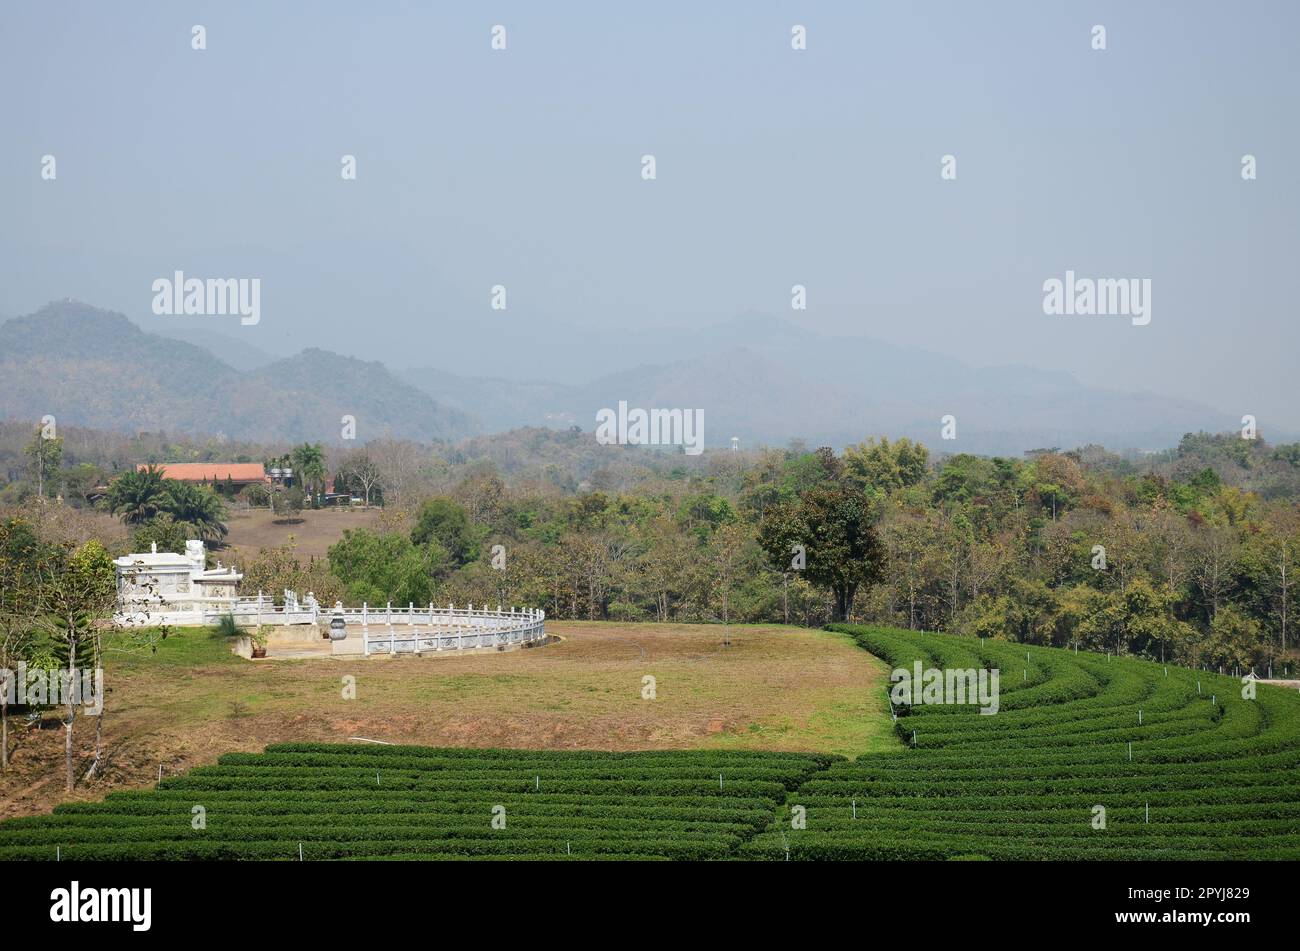 Vista paesaggio rurale campagna e parco giardino fattoria sulla montagna per i thailandesi e i viaggiatori stranieri visitare e riposare relax di Choui Fong Foto Stock